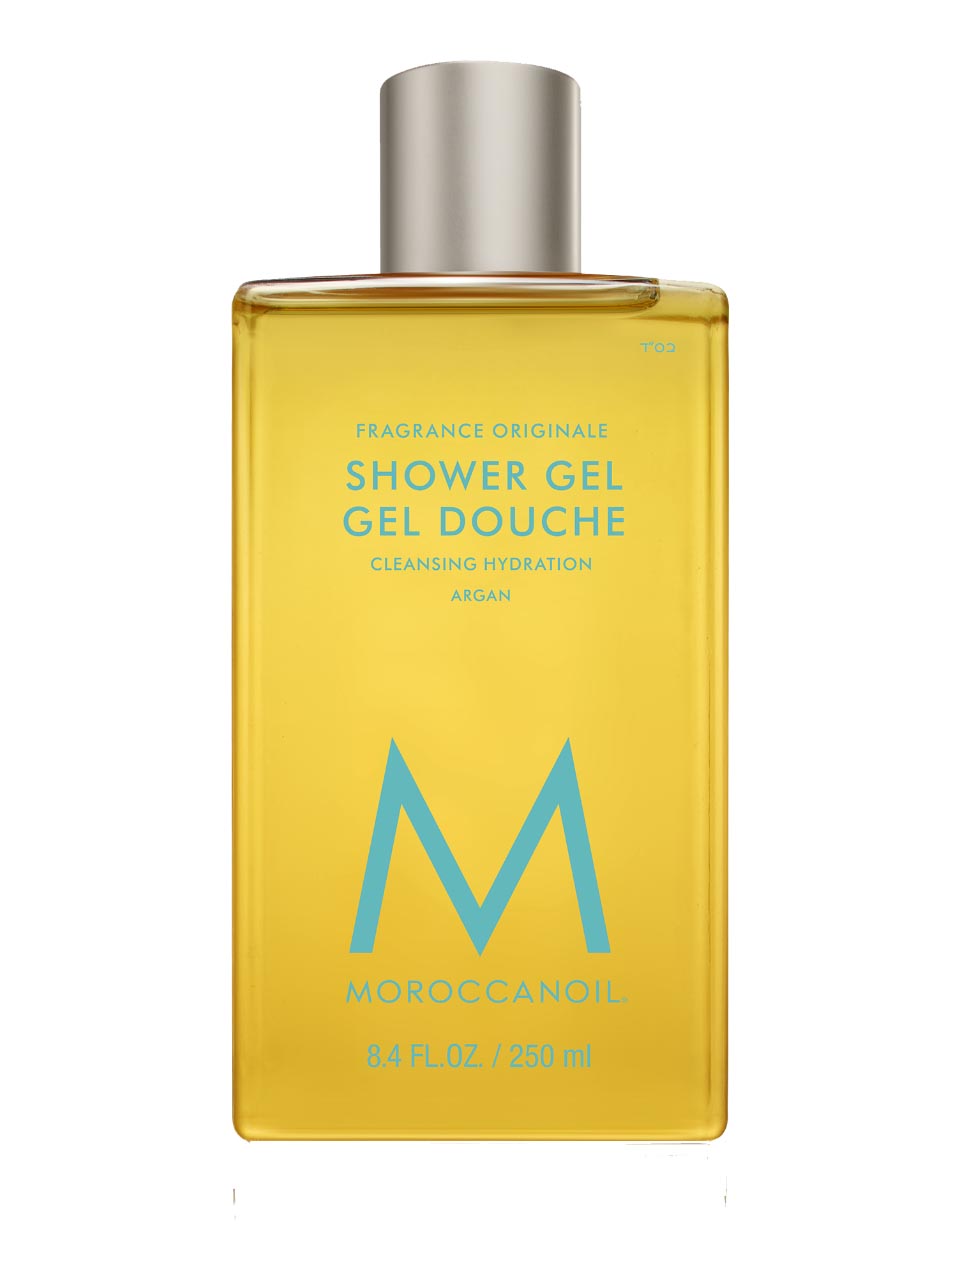 Moroccanoil Body Shower Gel - Fragrance Originale 200 ml null - onesize - 1